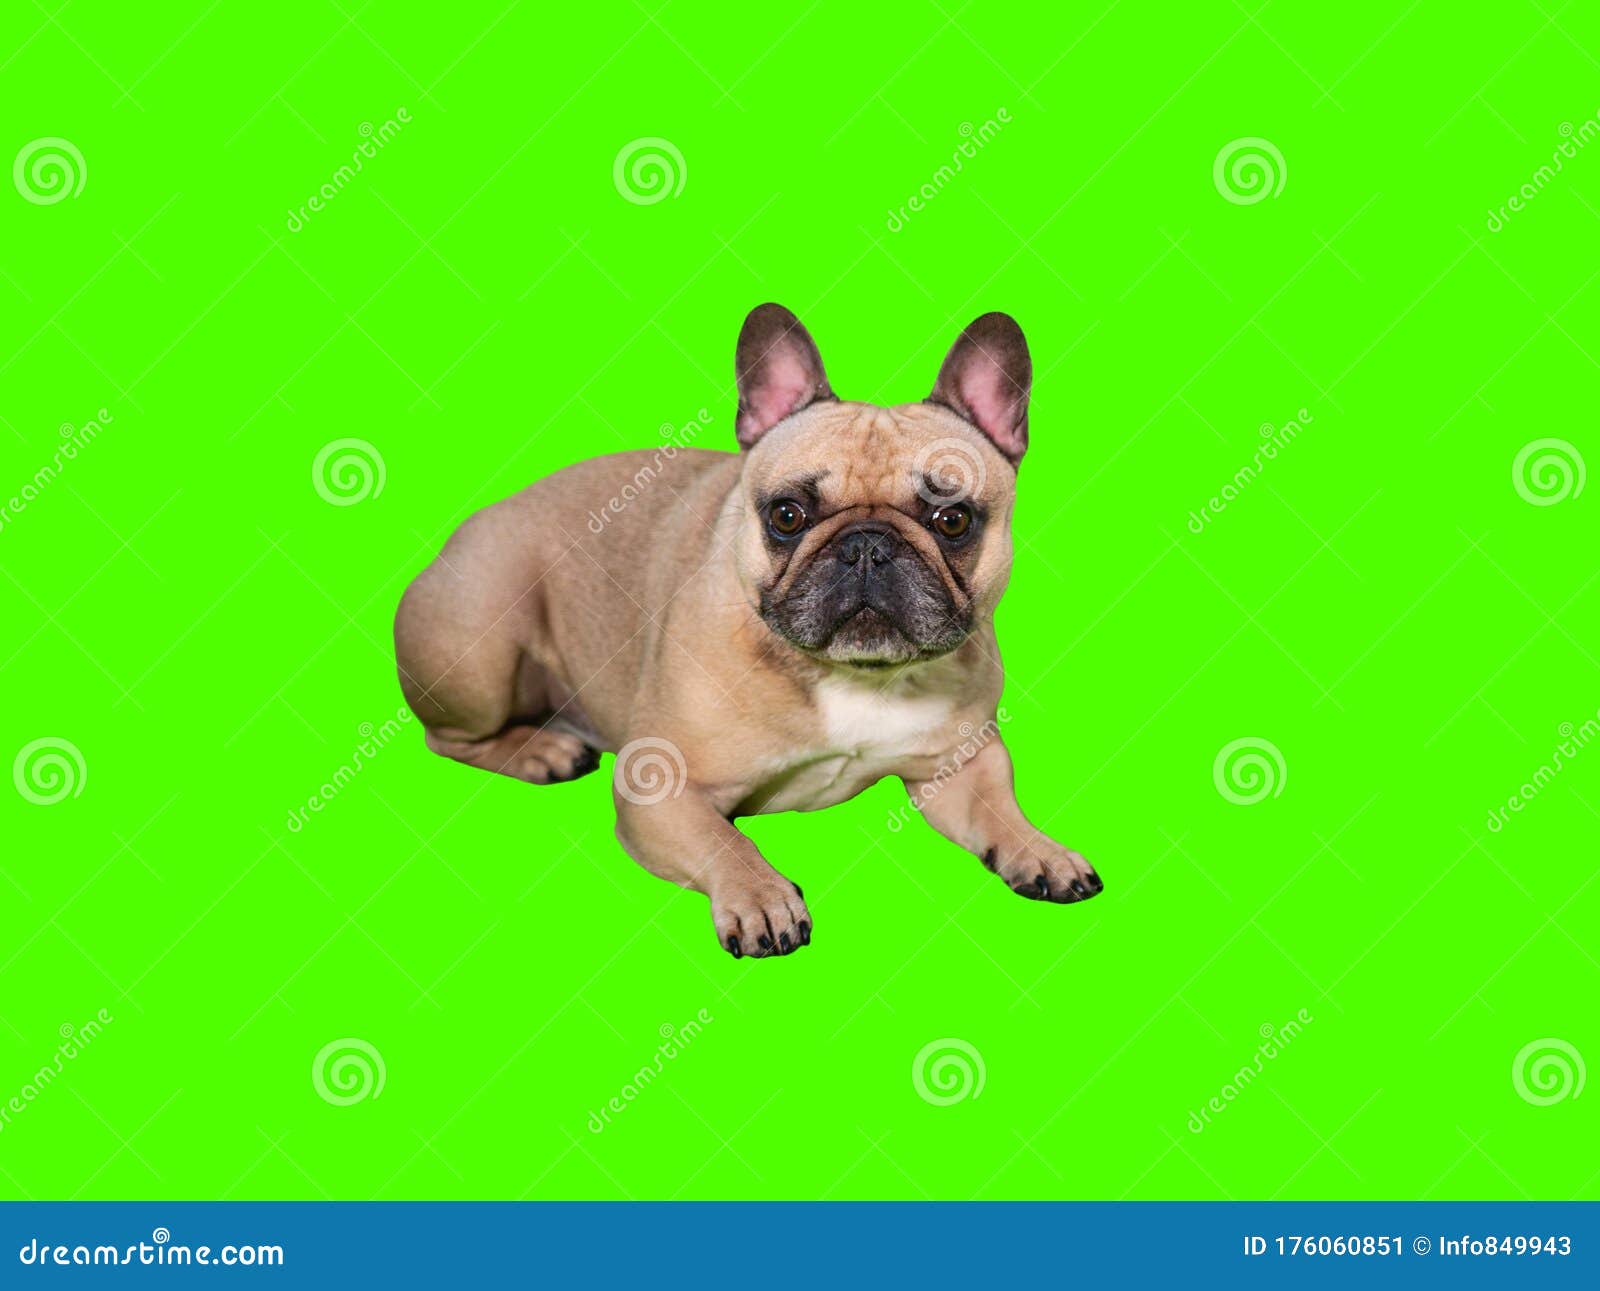 Xem chú chó corgi Pháp đáng yêu nằm trên nền xanh chroma key để truyền tải cho bạn tầm quan trọng của tình yêu và sự đáng yêu. Bức ảnh sẽ làm bạn cảm thấy như đang ôm chú chó vô cùng đáng yêu này.